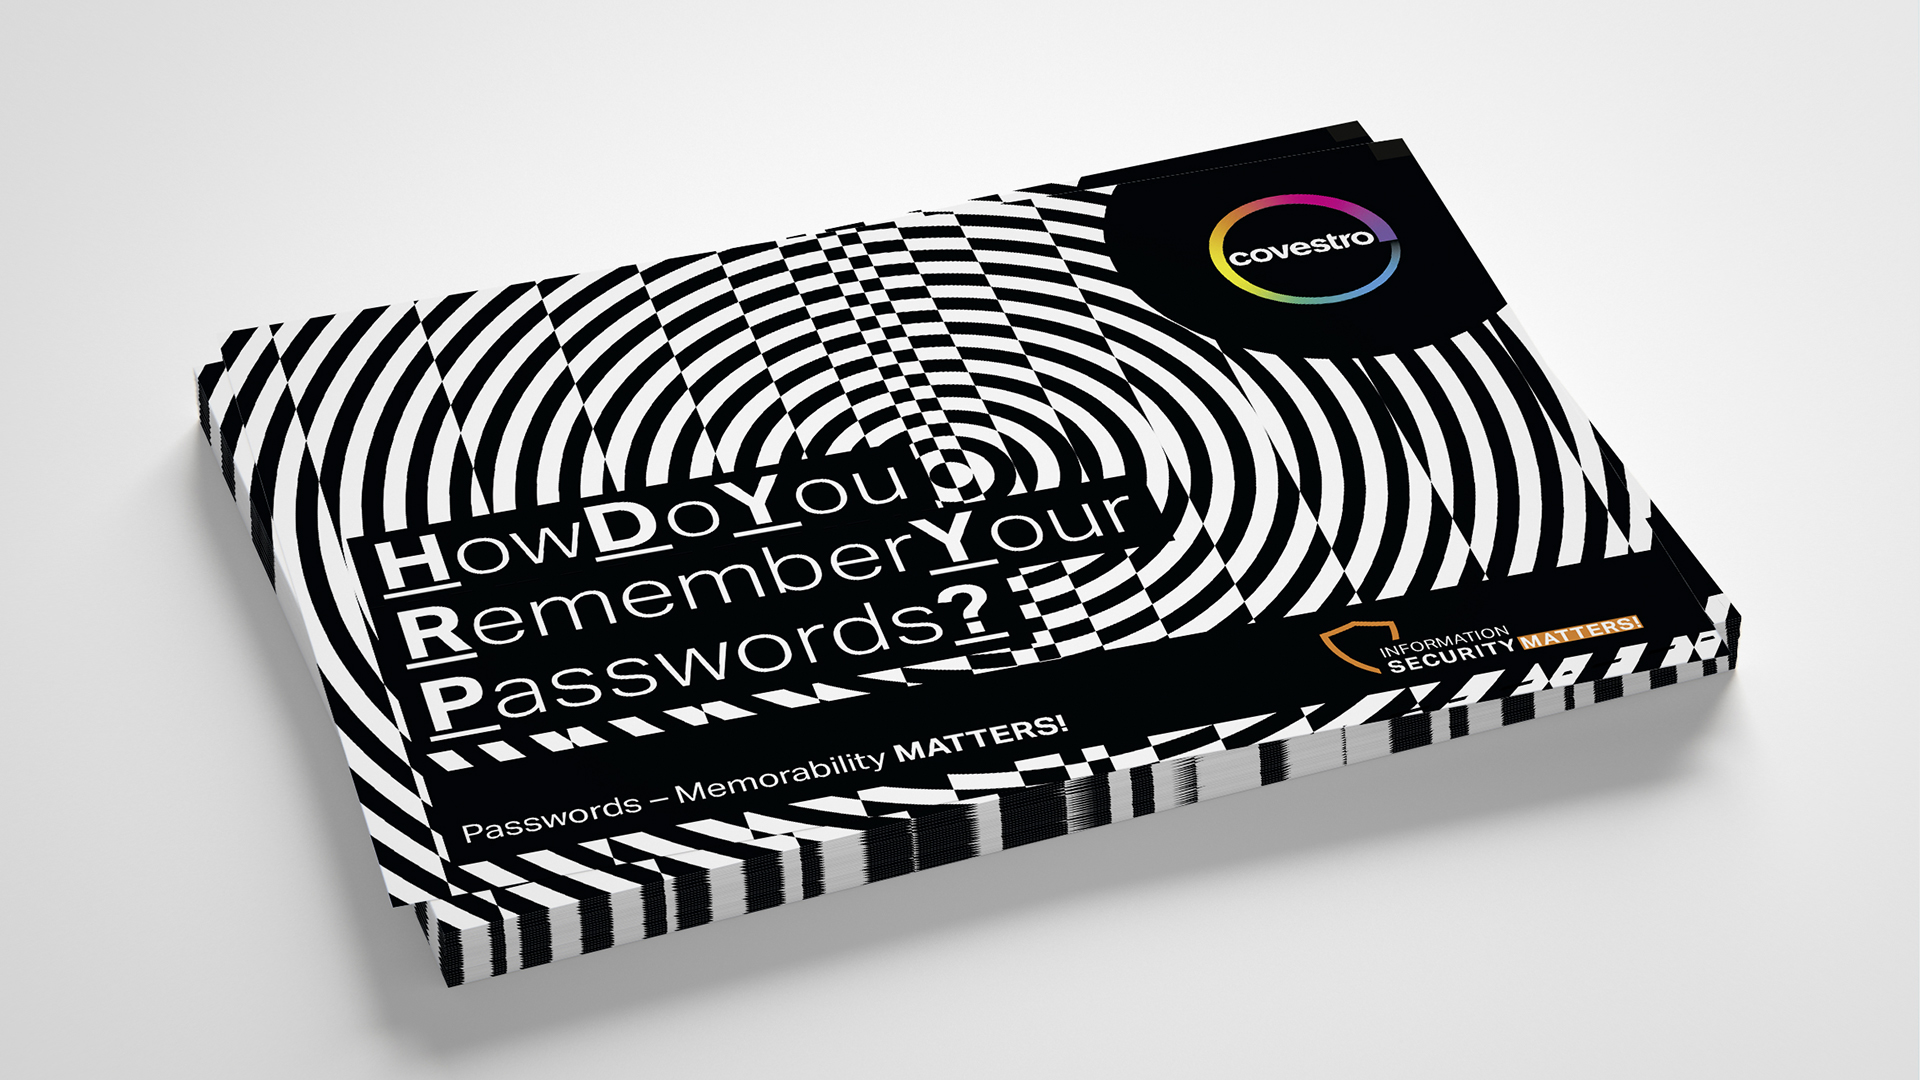 Covestro AG Kampagne Passwortsicherheit Postkarten